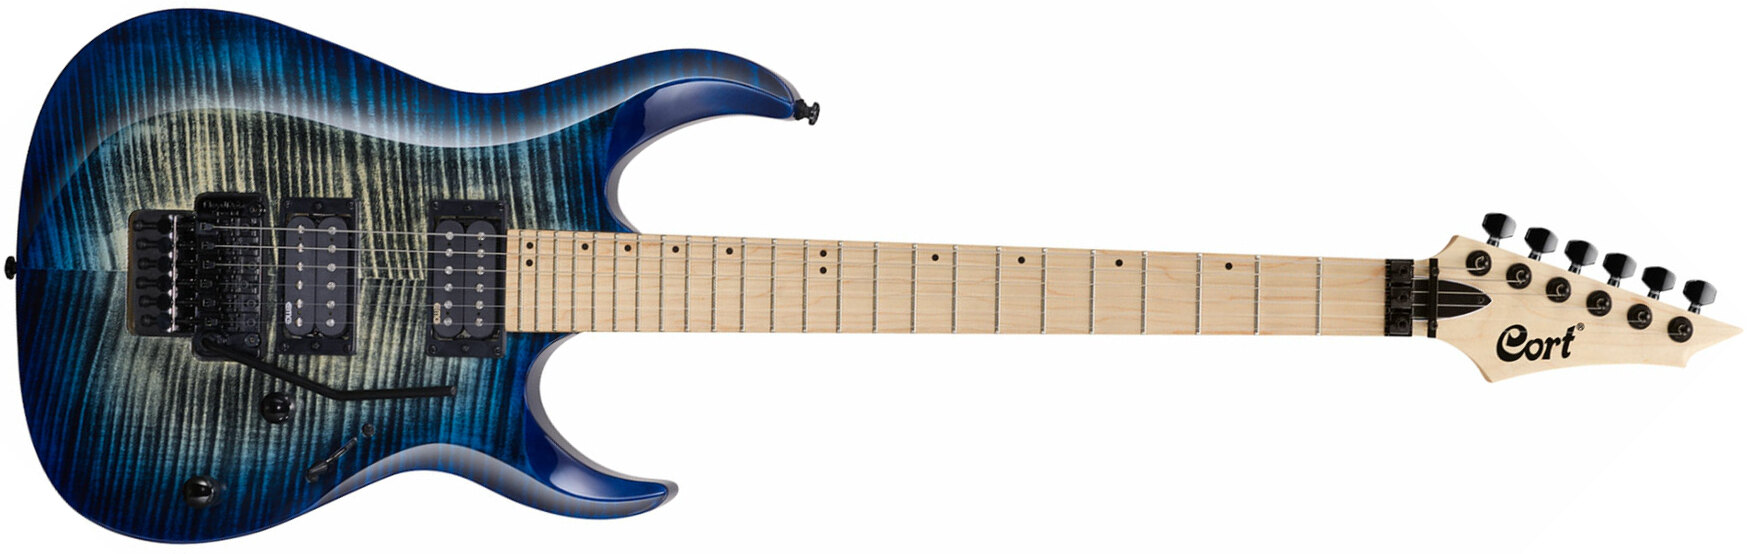 Cort X300 Fr Hh Mn - Blue Burst - Elektrische gitaar in Str-vorm - Main picture